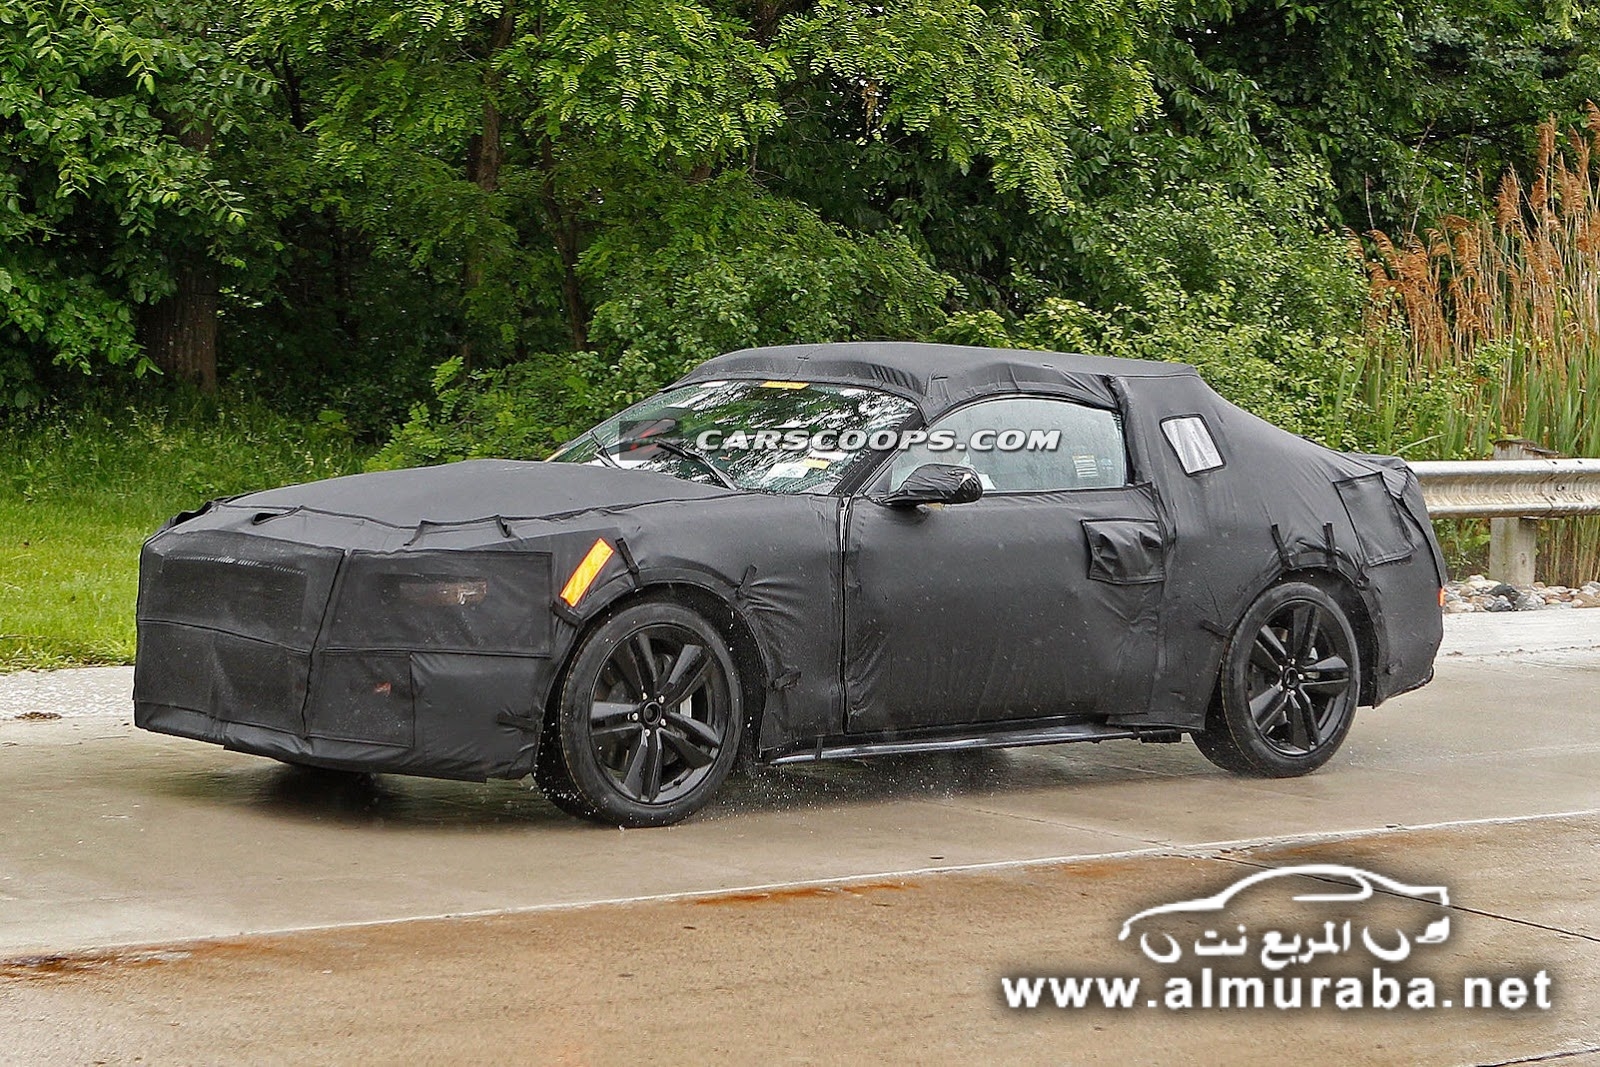 التقاط اول صور لسيارة فورد موستنج 2015 الجديدة كلياً خلال اختبارها Mustang 2015 2